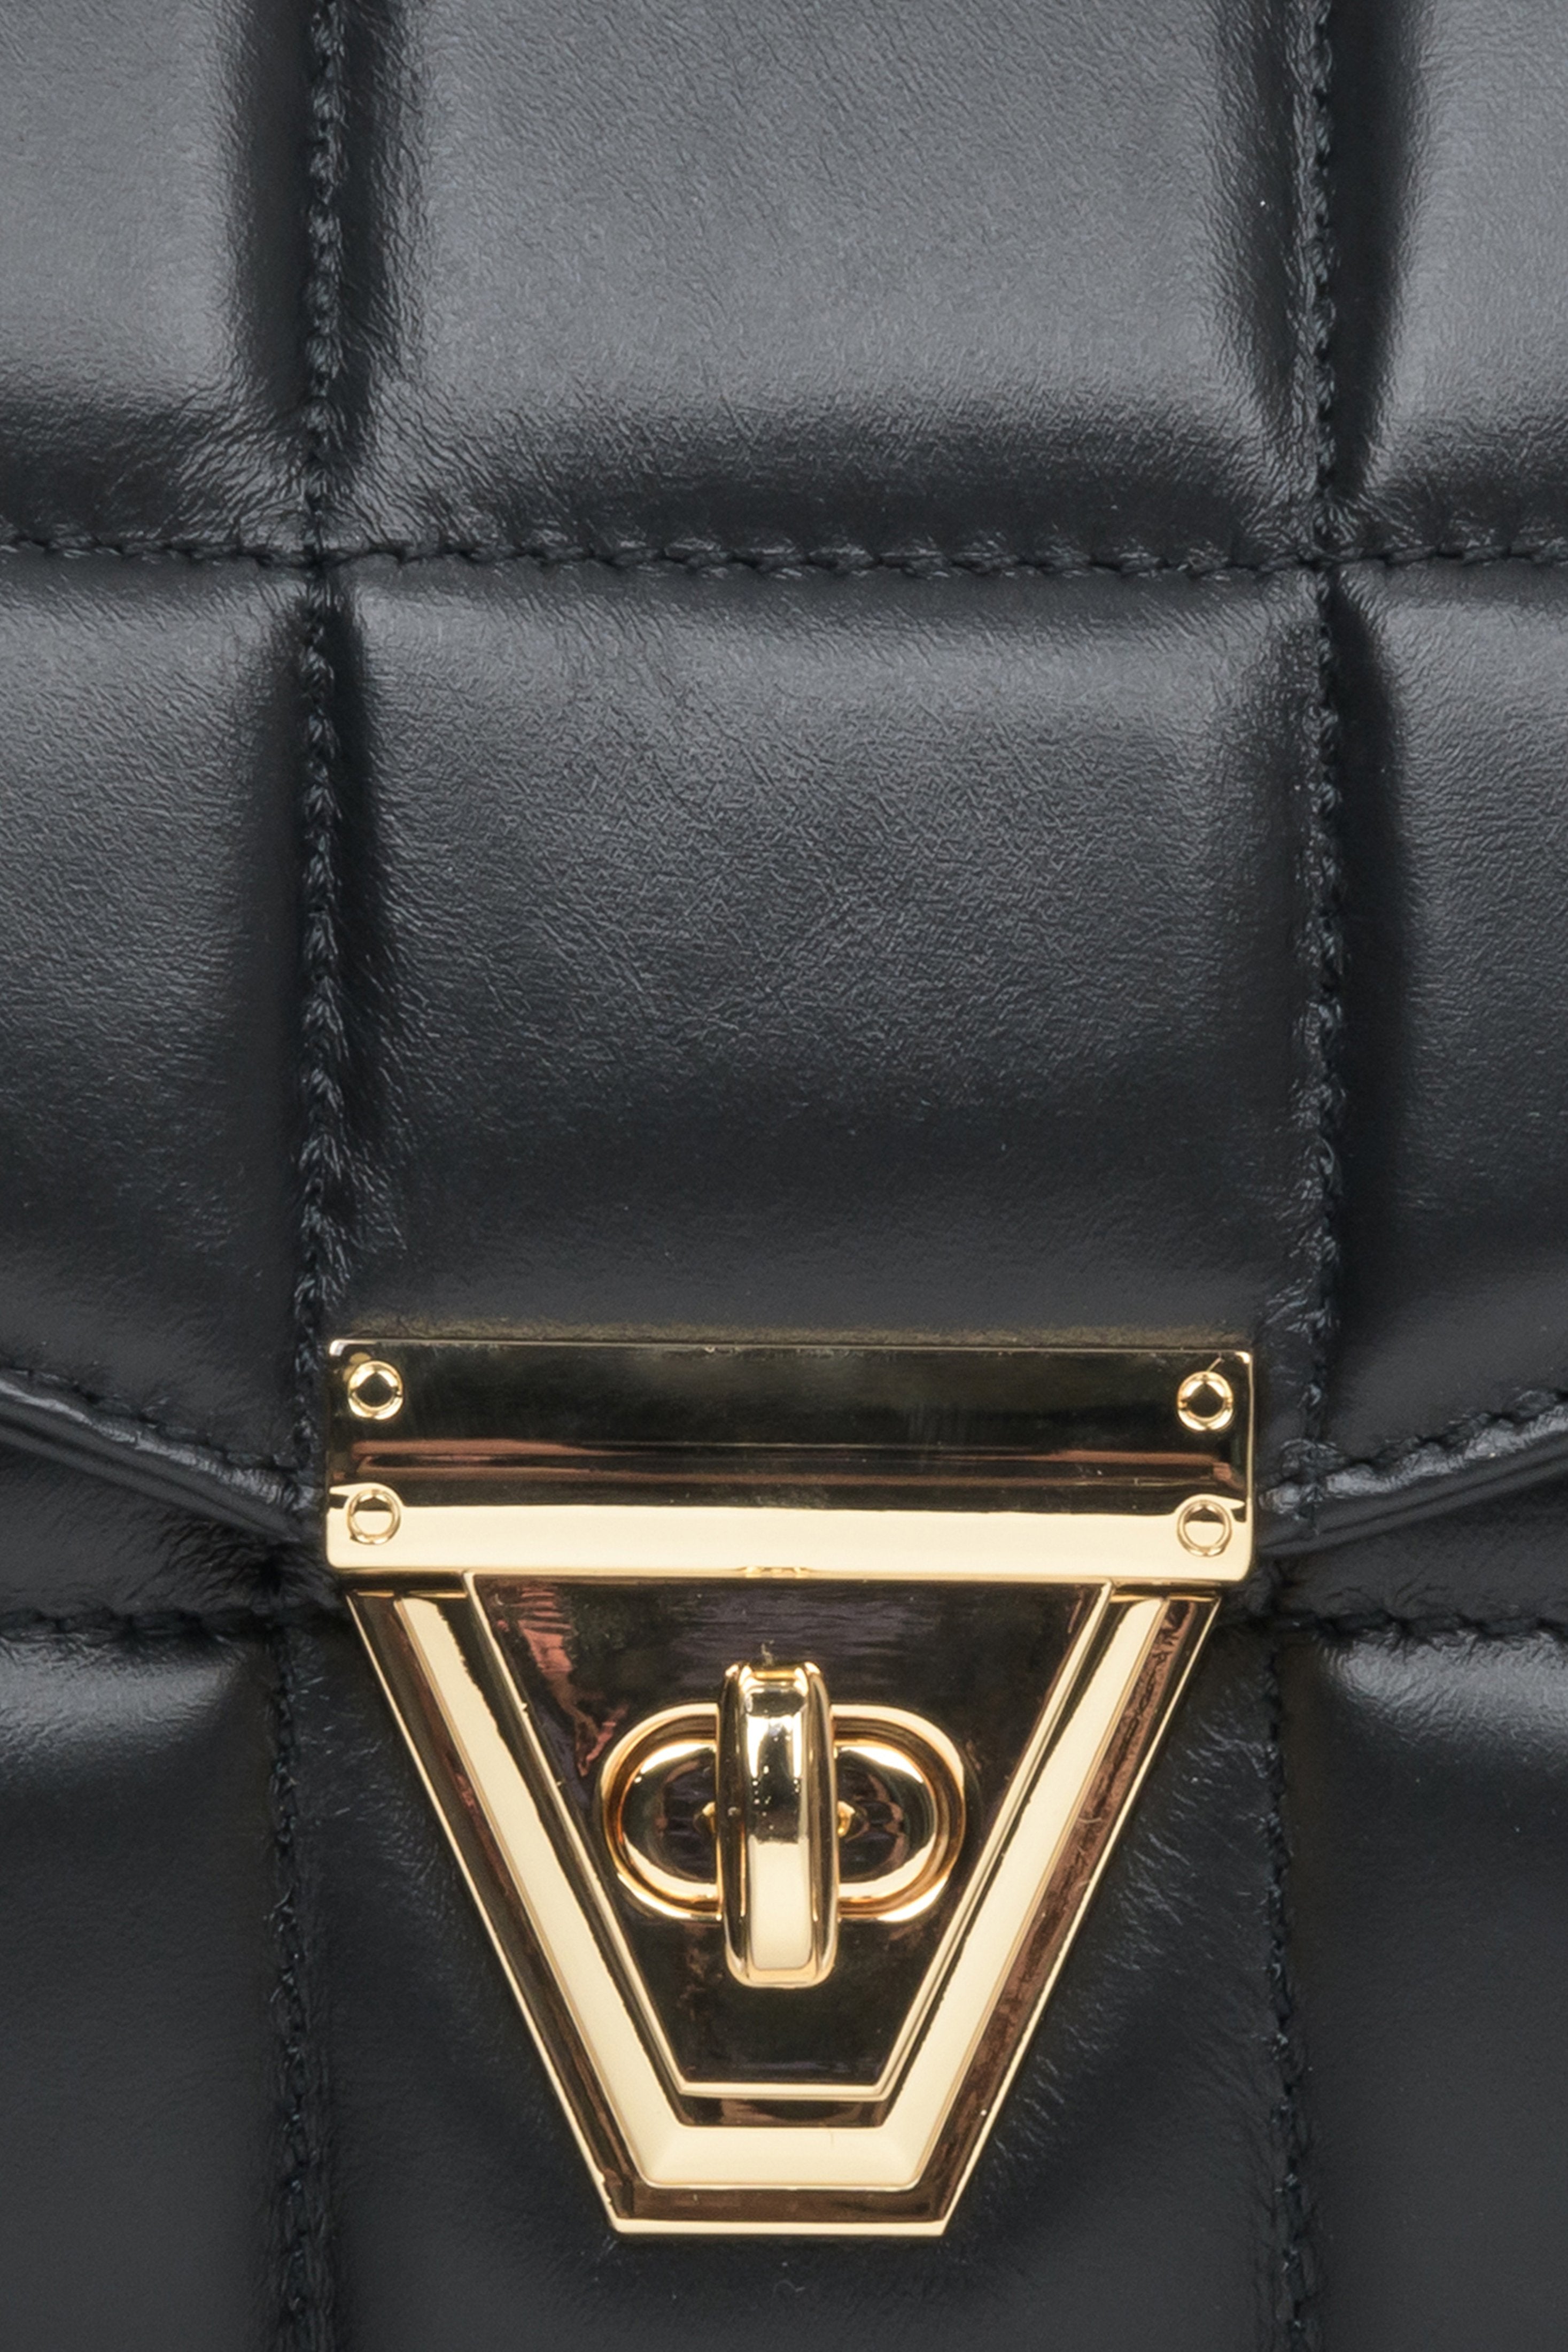 Czarna, skórzana torebka damska pikowana ze złotym łańcuszkiem Estro - zbliżenie na detale.